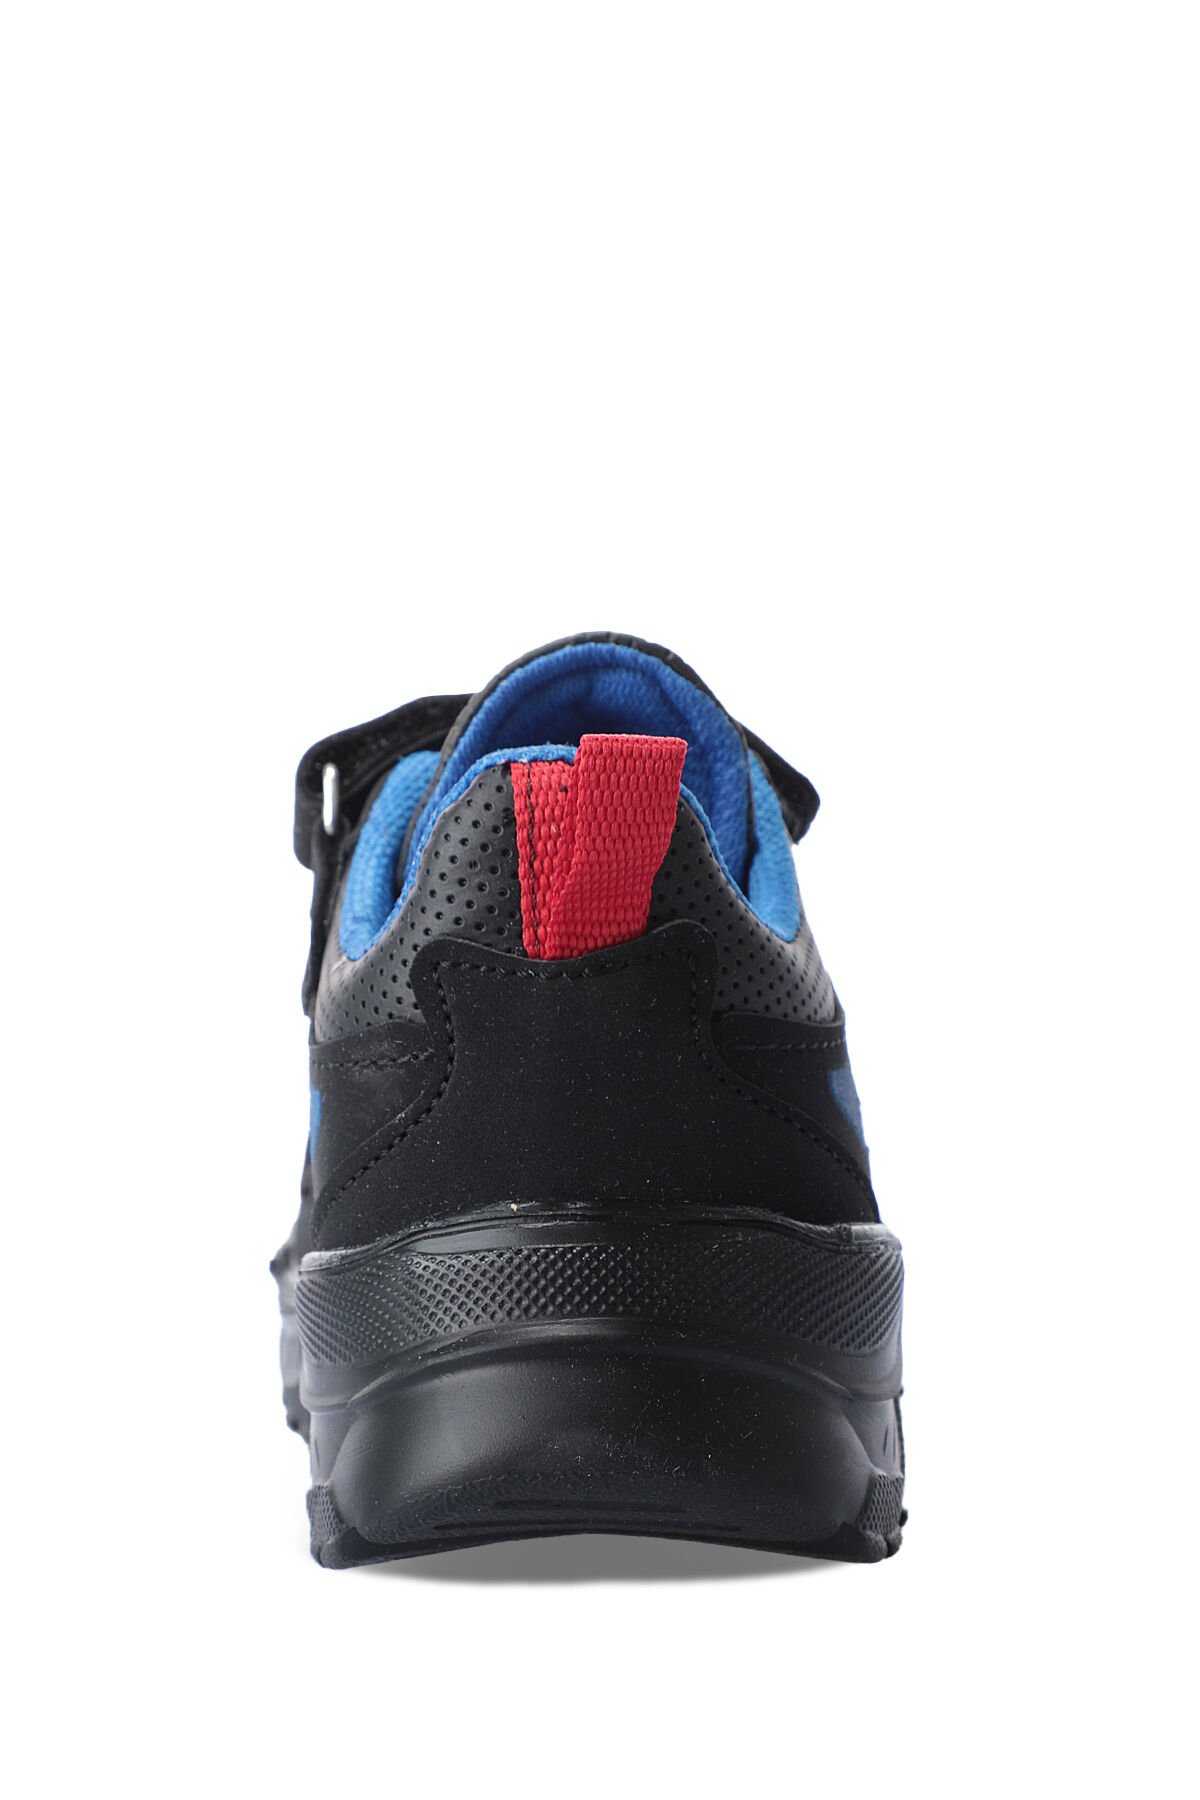 Slazenger KANEVA Sneaker Erkek Çocuk Ayakkabı Siyah / Siyah - Thumbnail